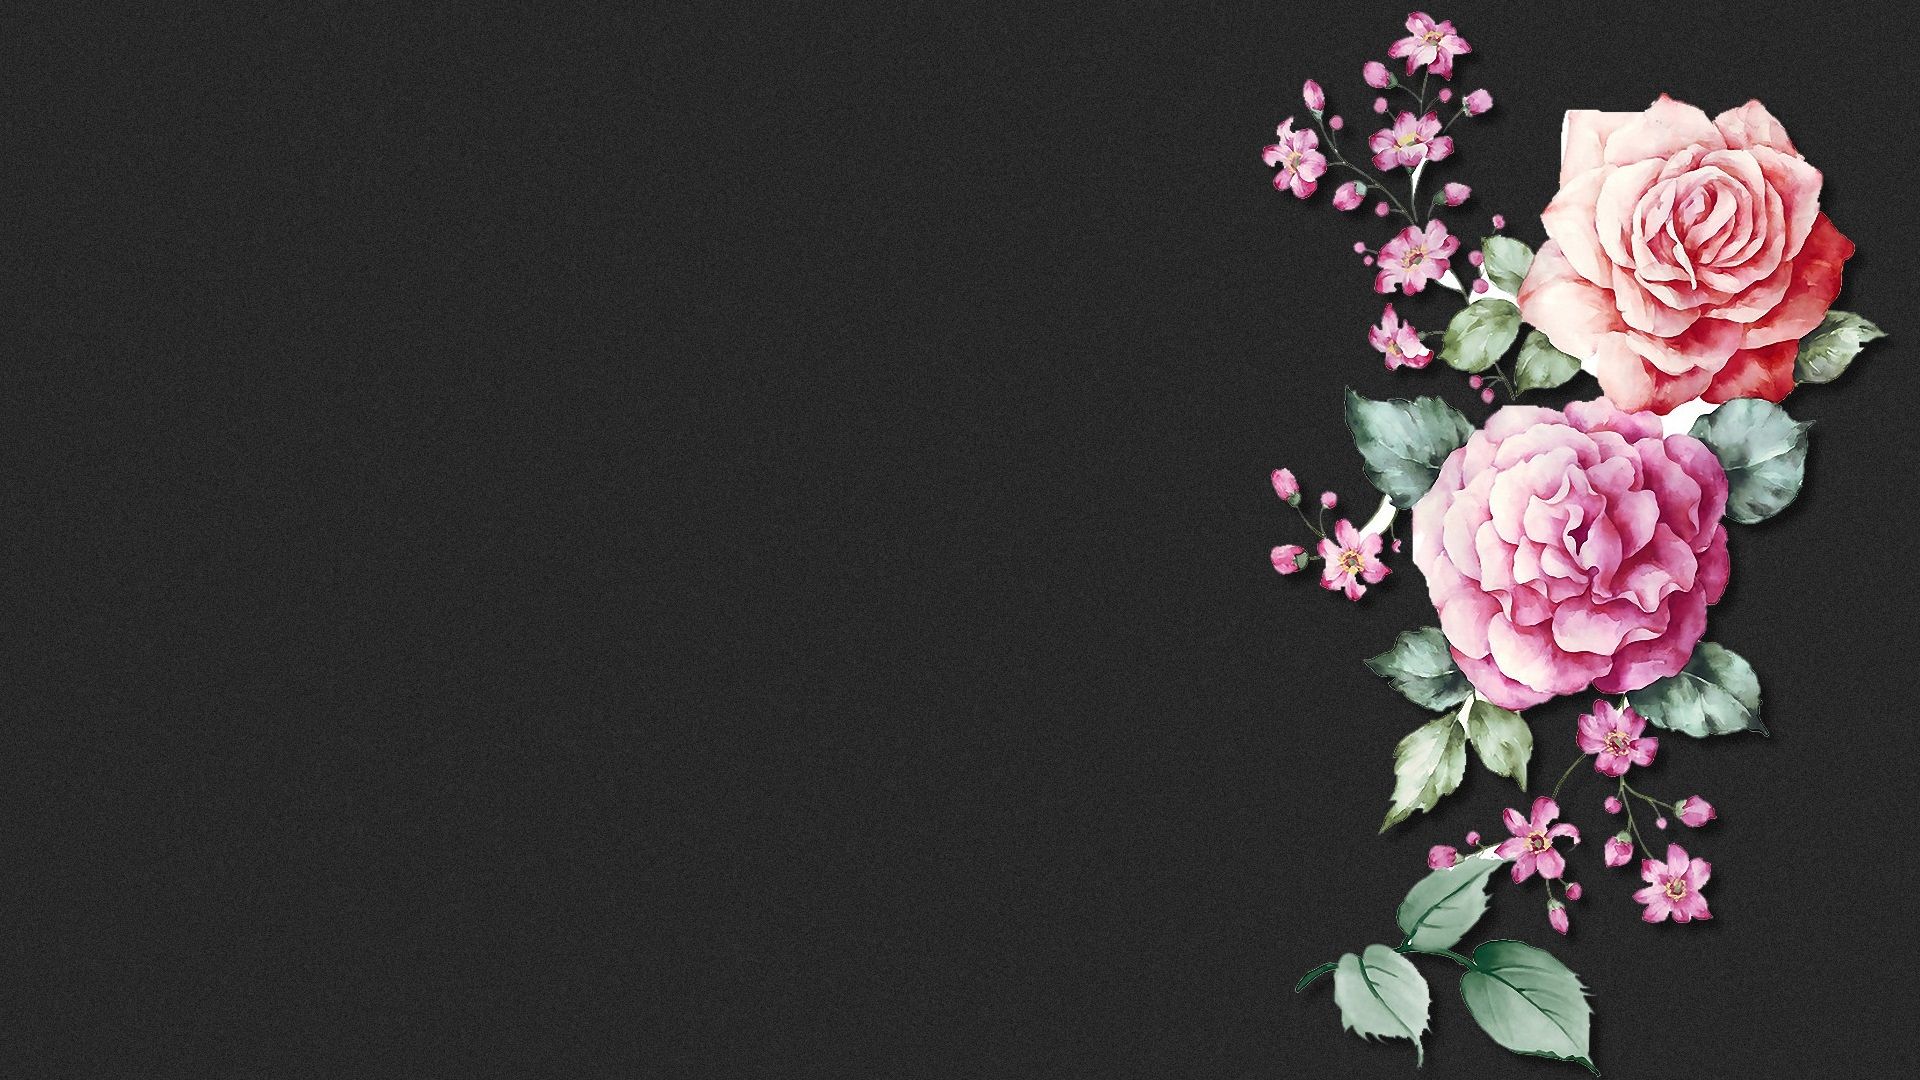  Blumen Hintergrundbild 1920x1080. Hintergrundbilder Blumen HD Kostenlos